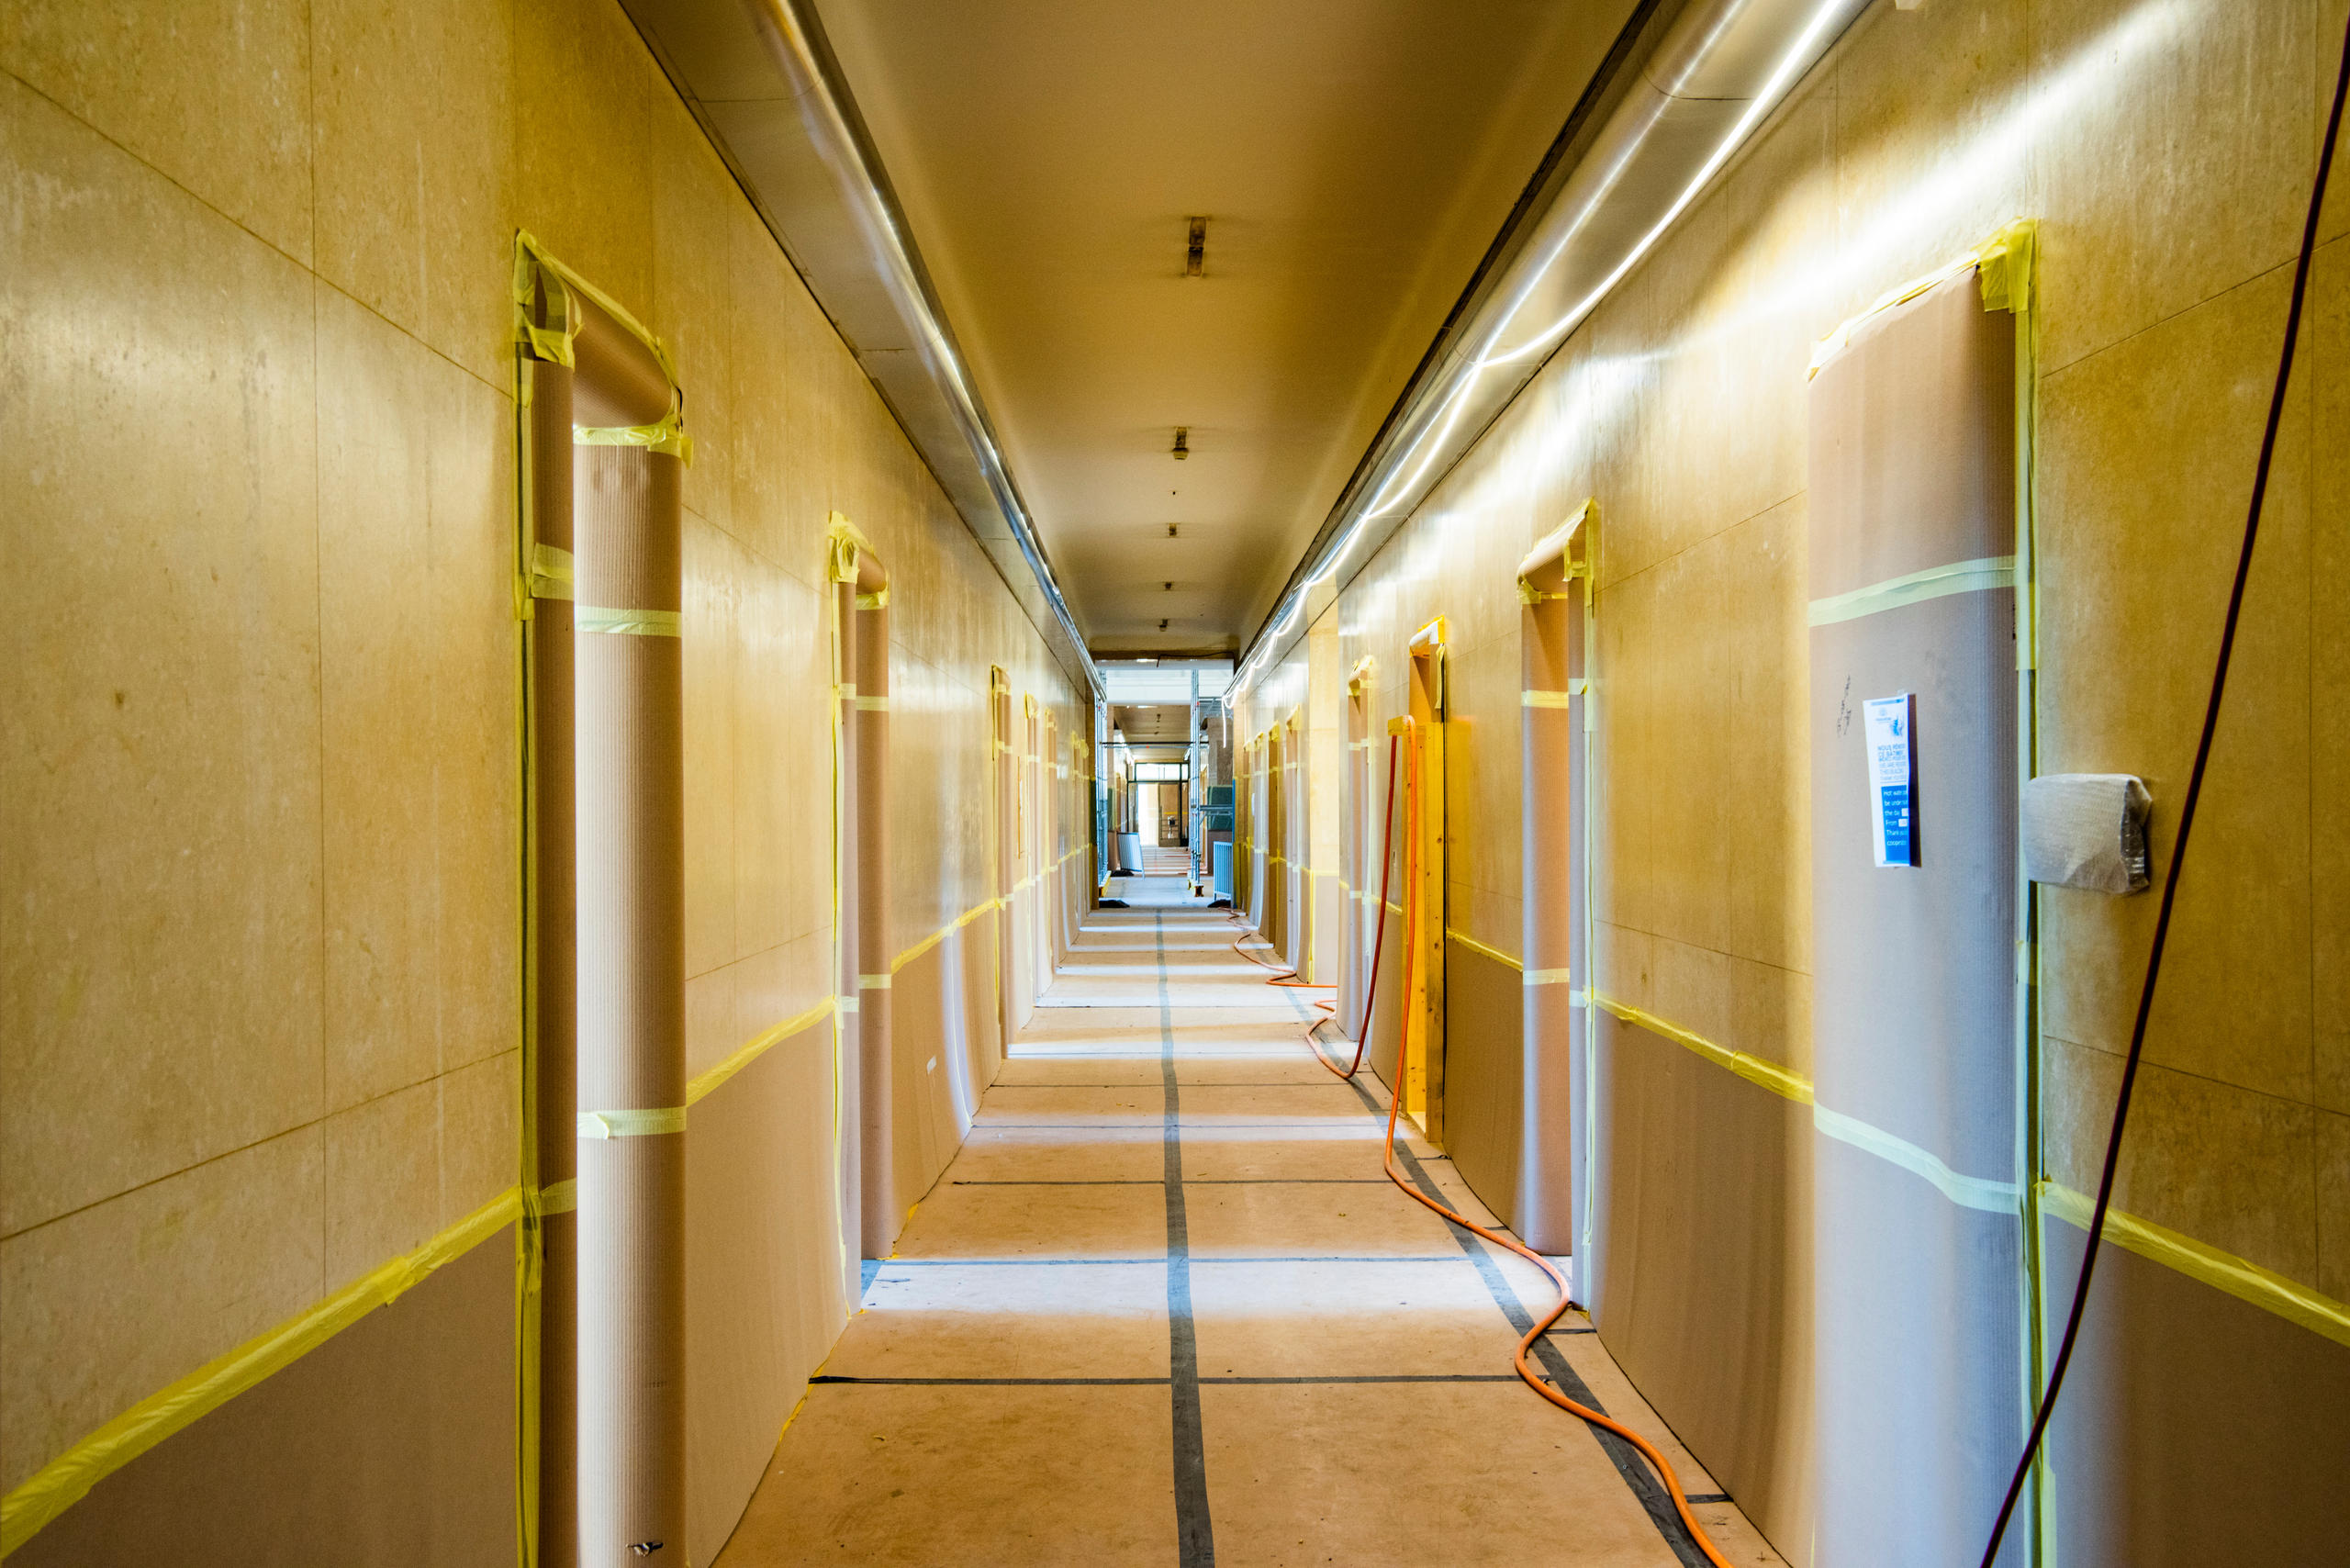 Corridor of the Palais des Nations.